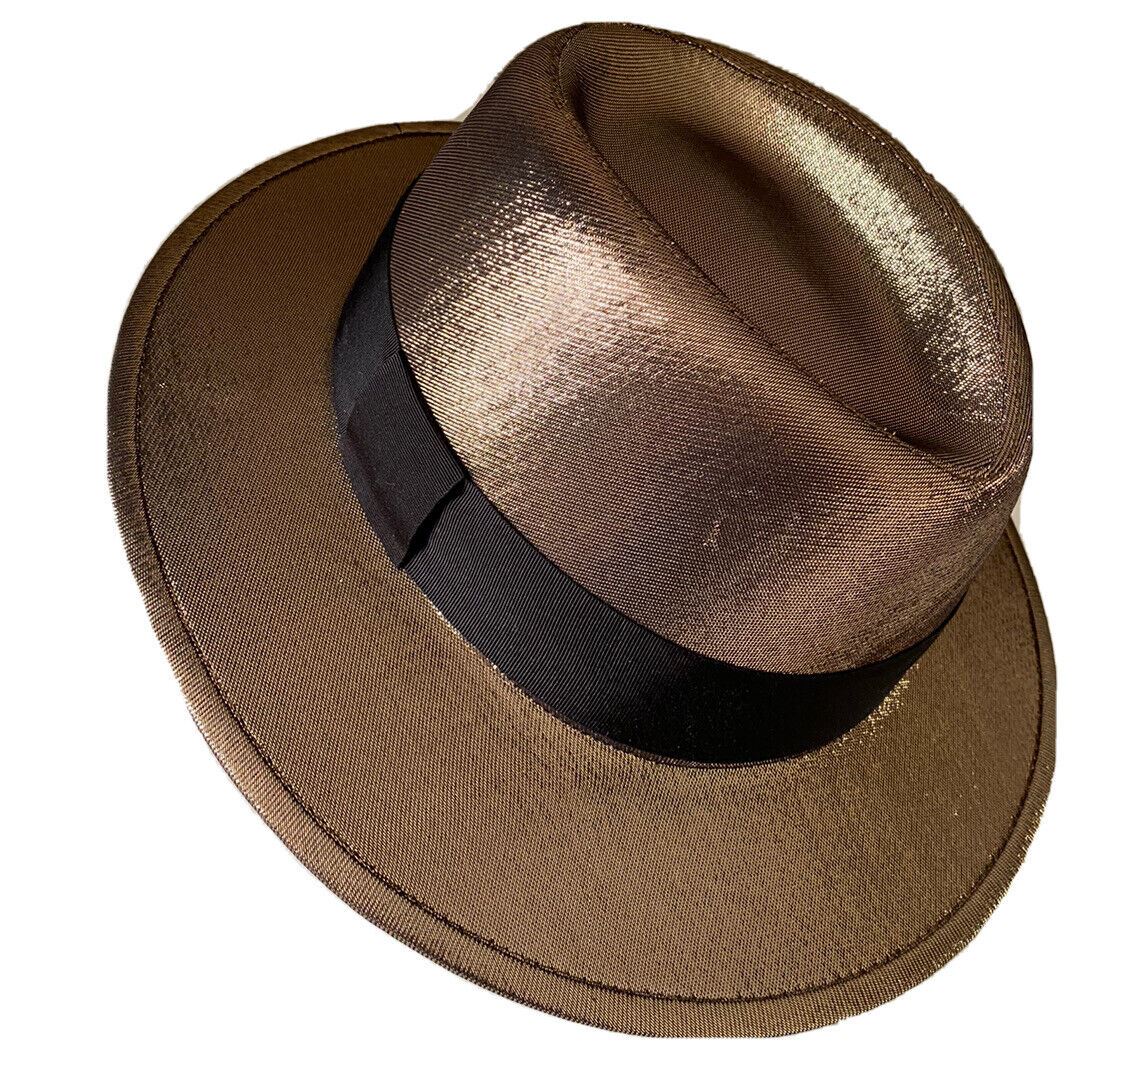 СЗТ 895 долларов США Saint Laurent Мужская фетровая шляпа Lane Fedora золотистого цвета, размер L, Италия